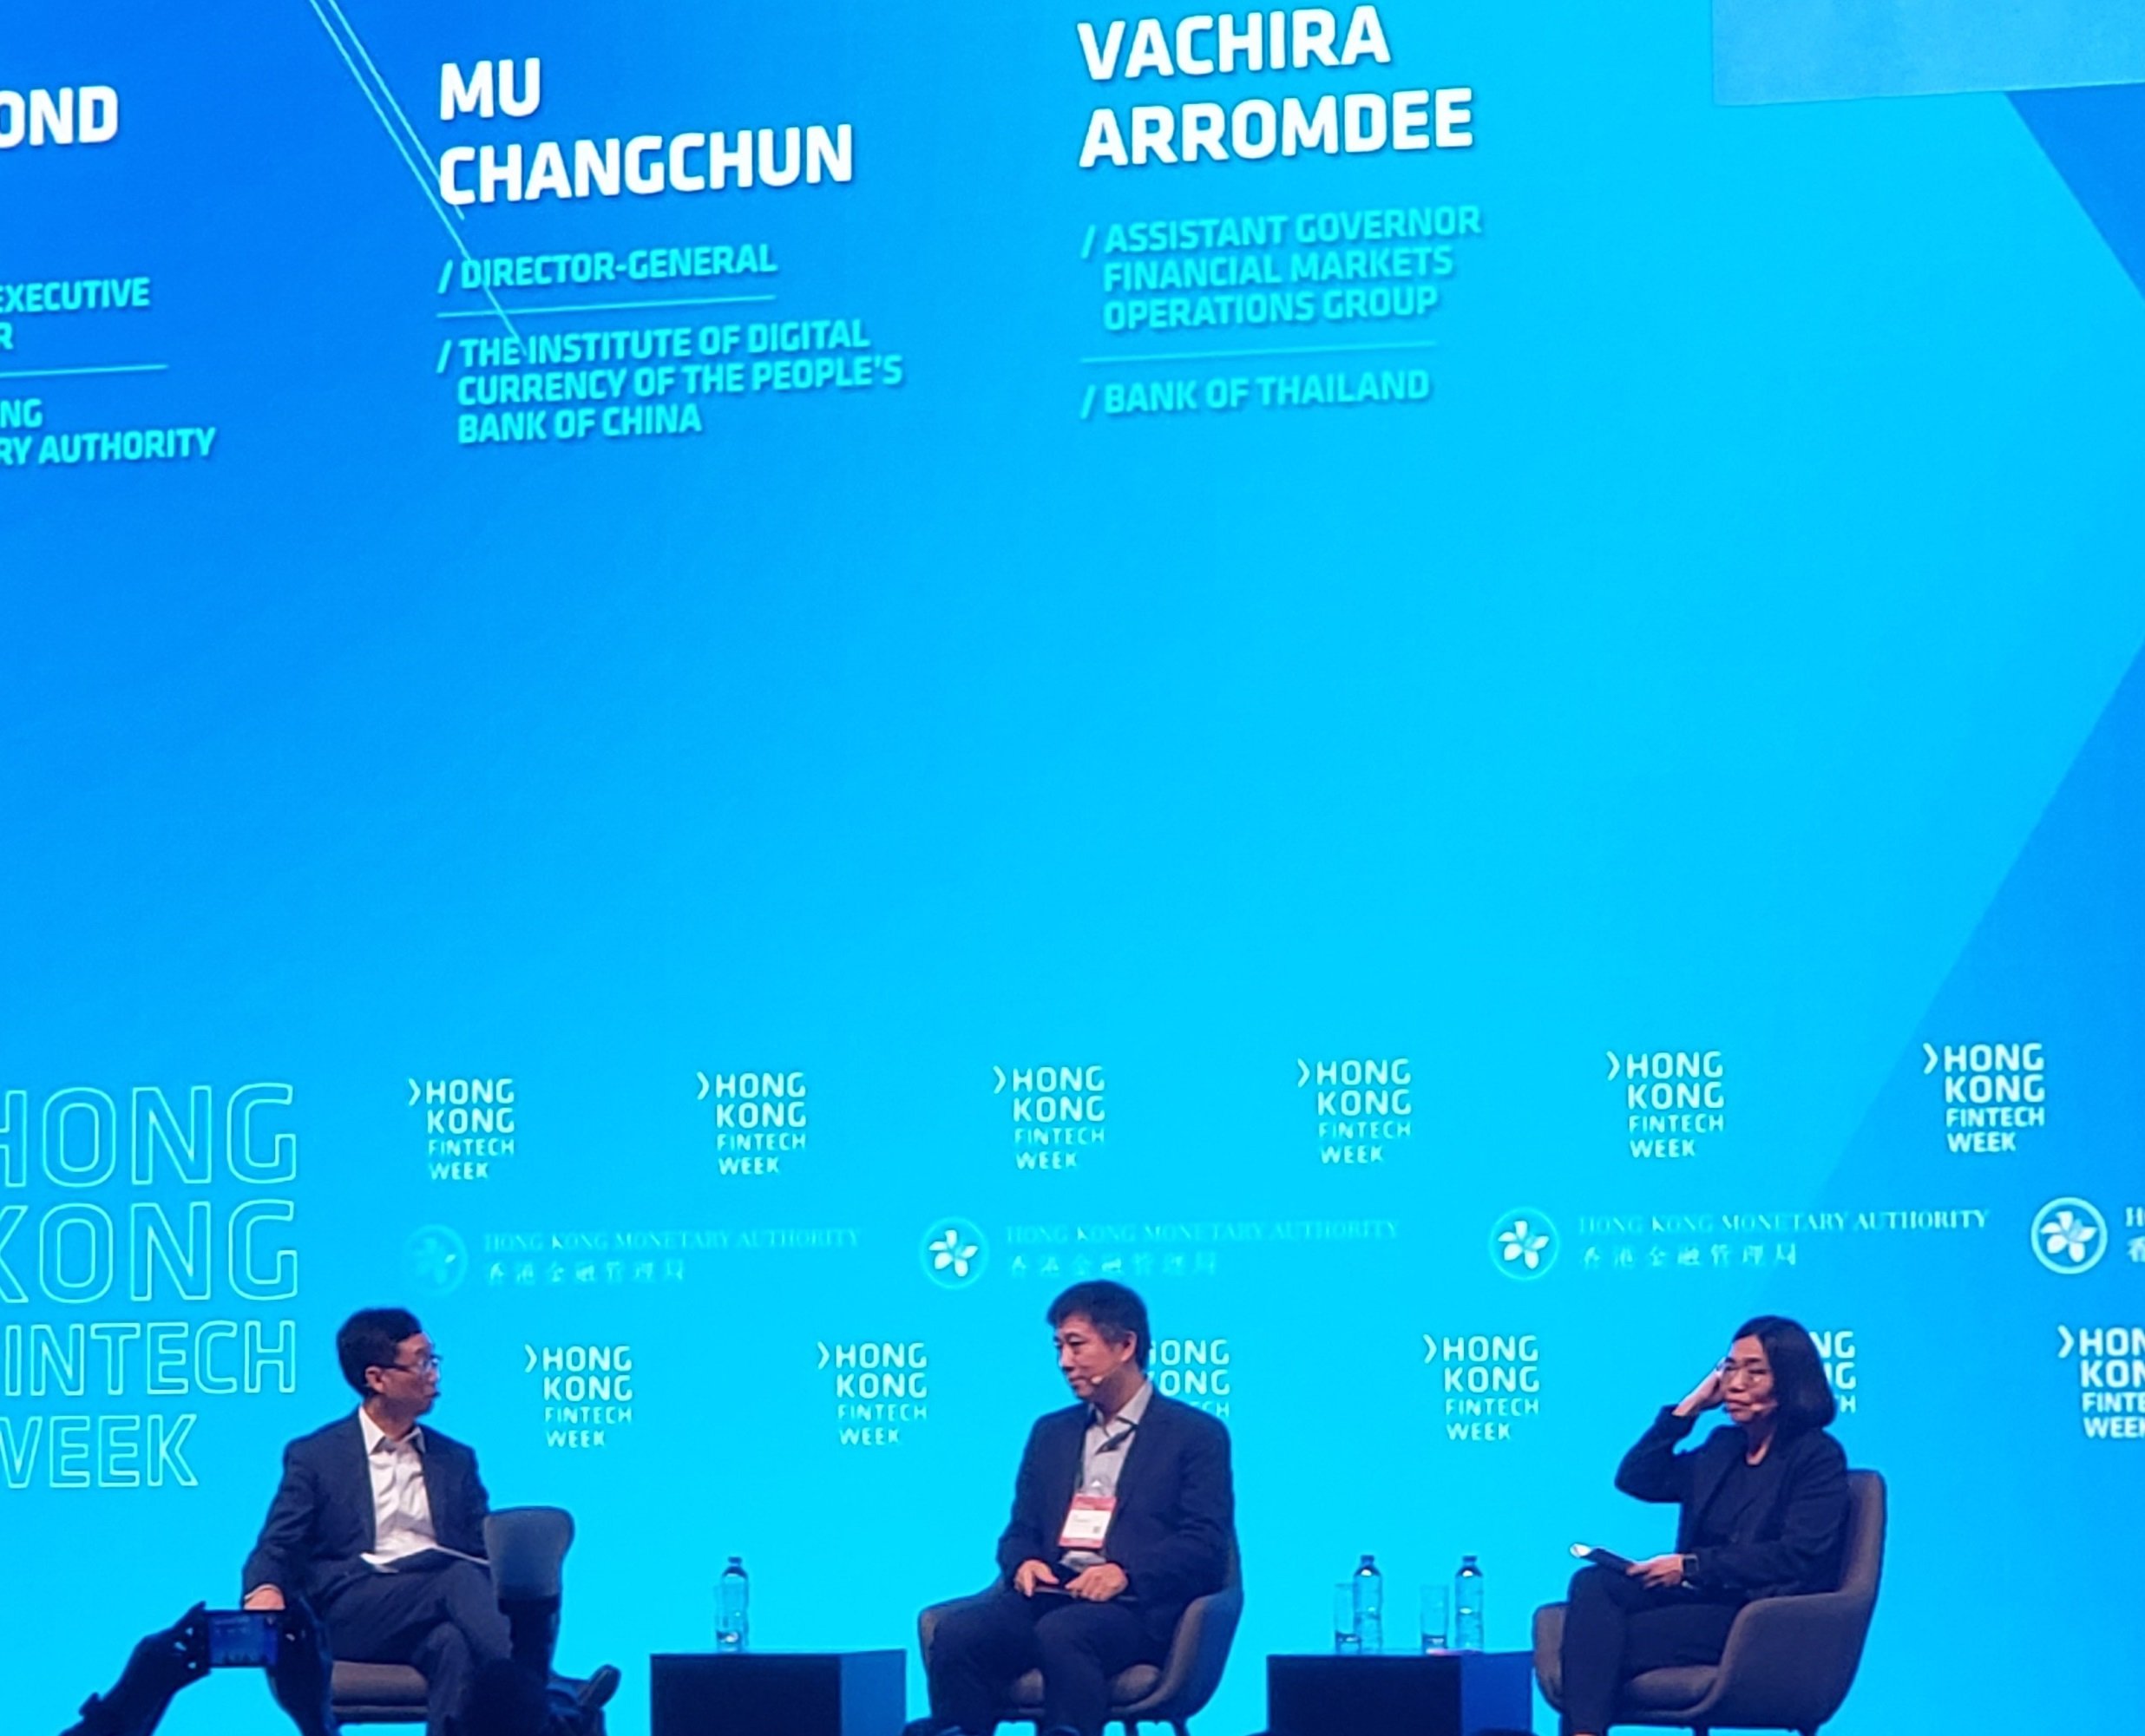 From left: Edmond Lau, HKMA; Changchun Mu, PBOC; Vachira Arromdee, Bank of Thailand, speak at a Hong Kong Fintech Week panel